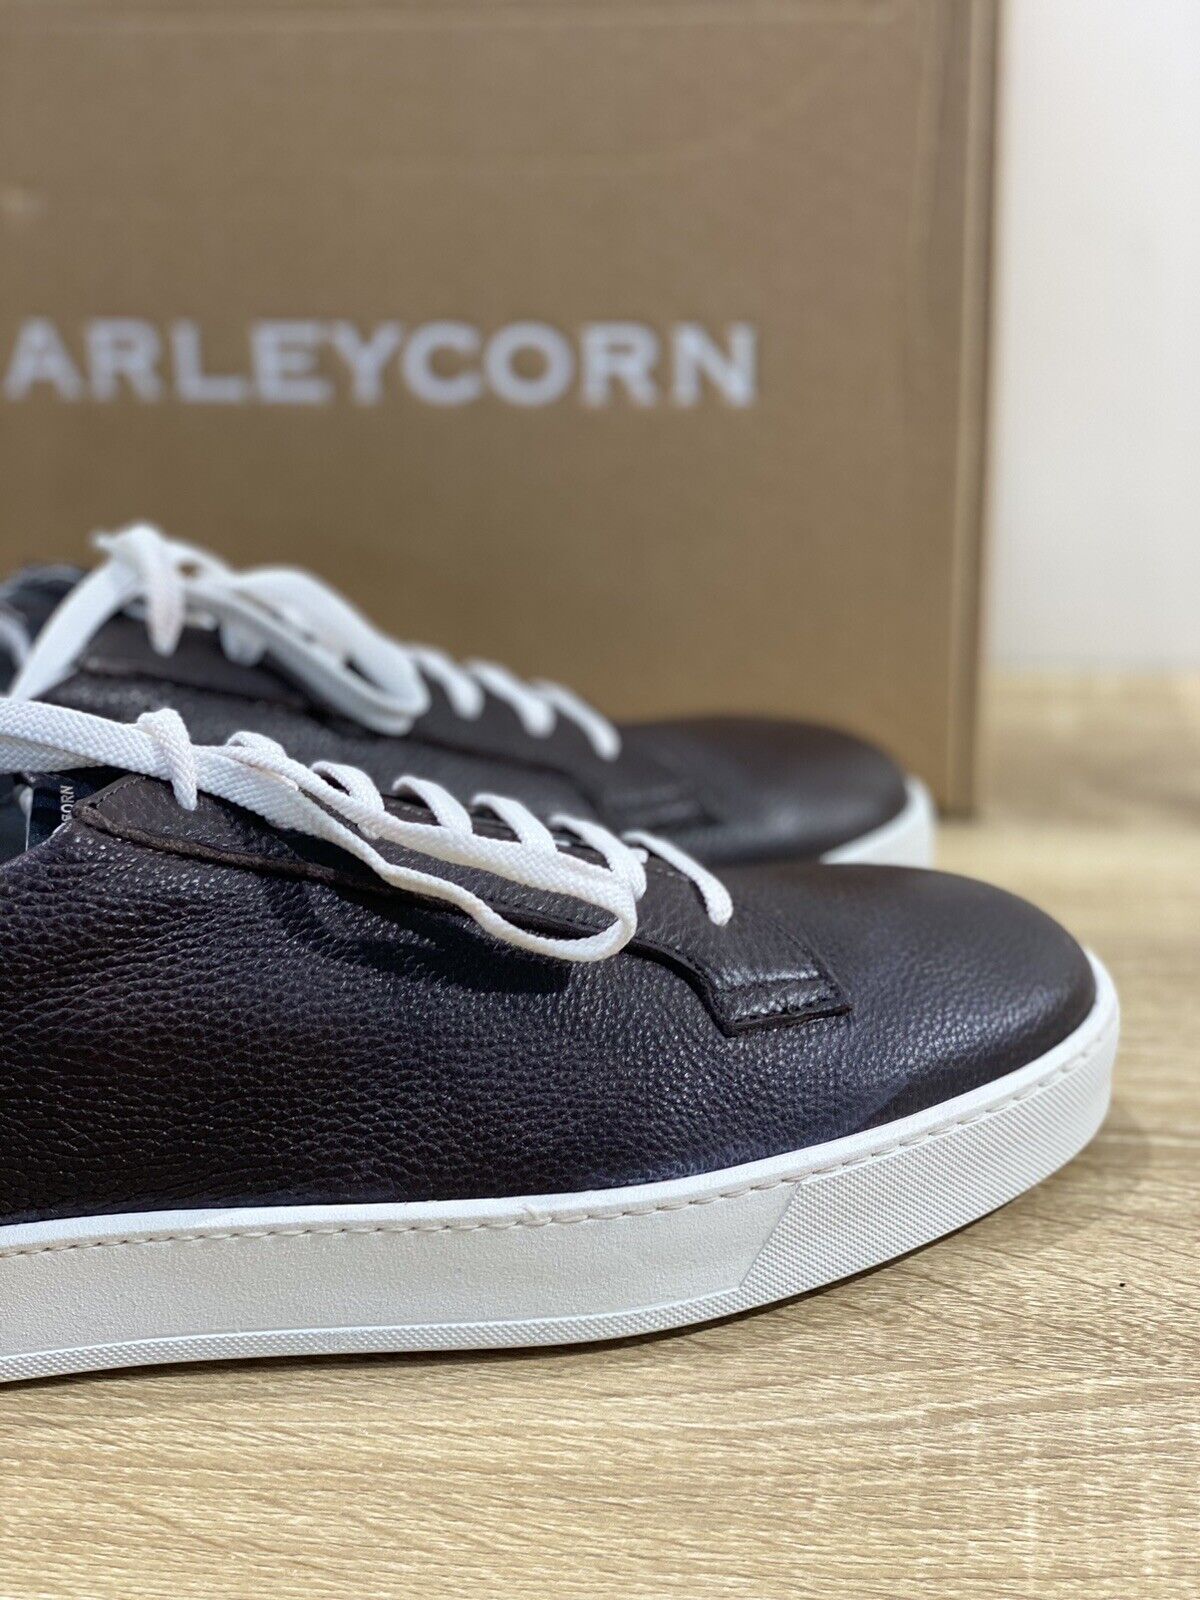 Barleycorn Sneaker Uomo Lord In Pelle Marrone Casual Men Shoes 46